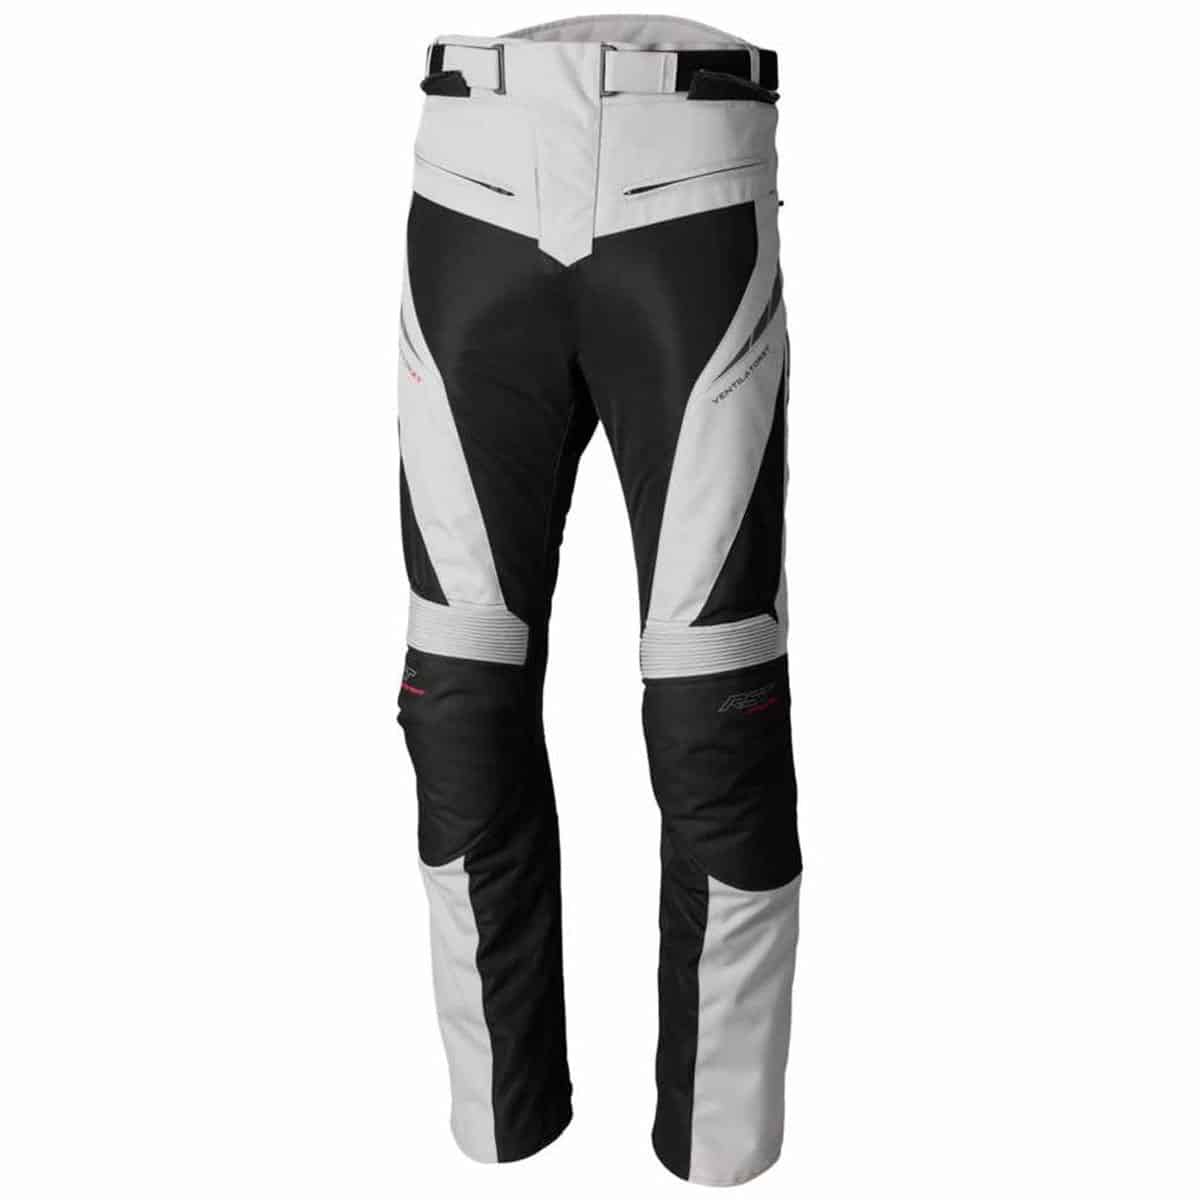 Mens Motorcycle Trousers Waterproof Motorbike Pants With Braces Black  Textile  eBay